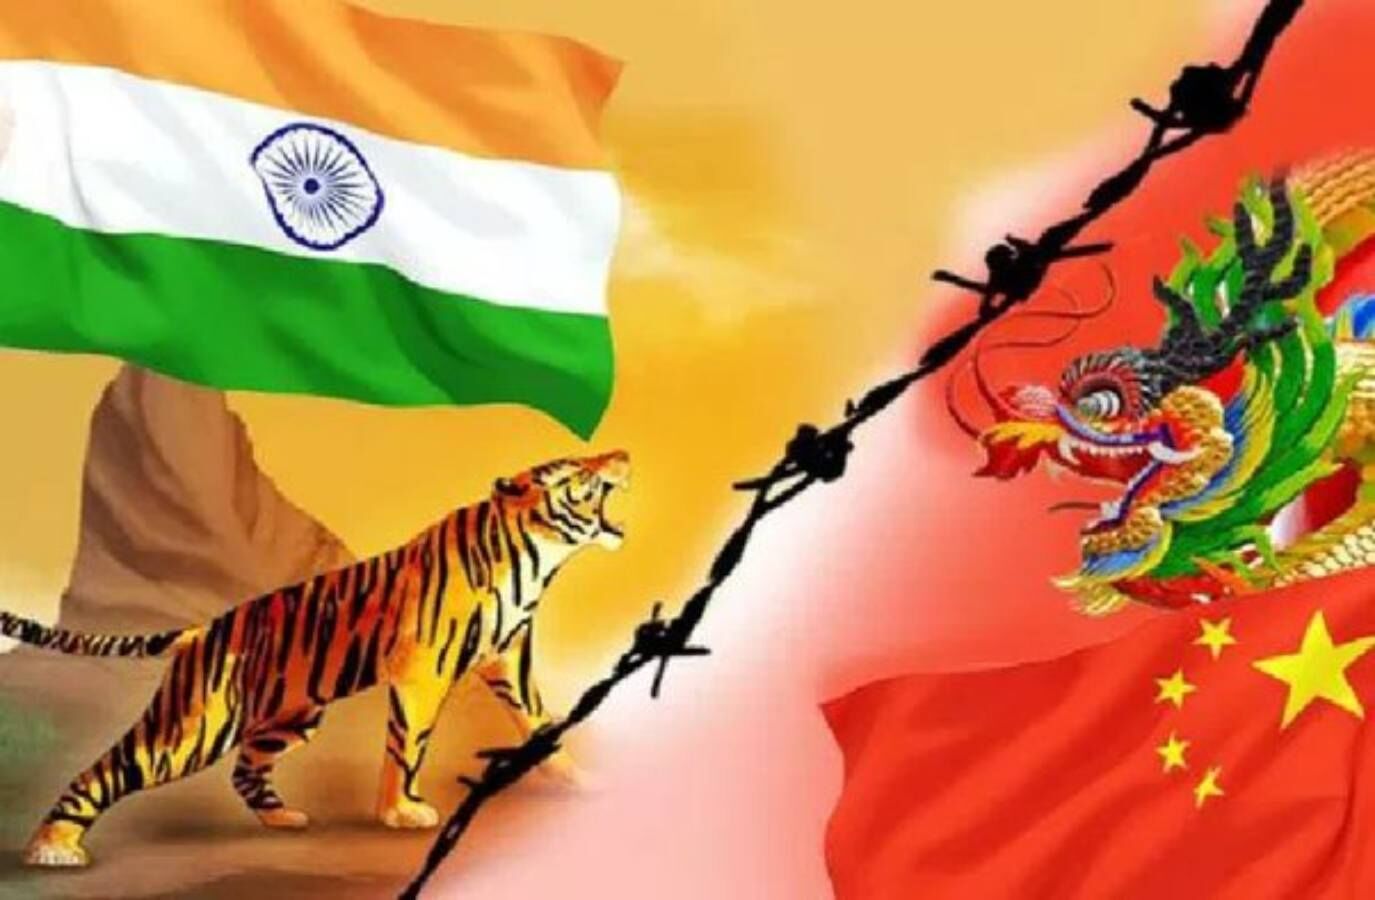 who will be heavy if there is a war between india and china who would win  india china clash in Tawang sector india china clash at arunachal pradesh,  newstrack hindi, India China